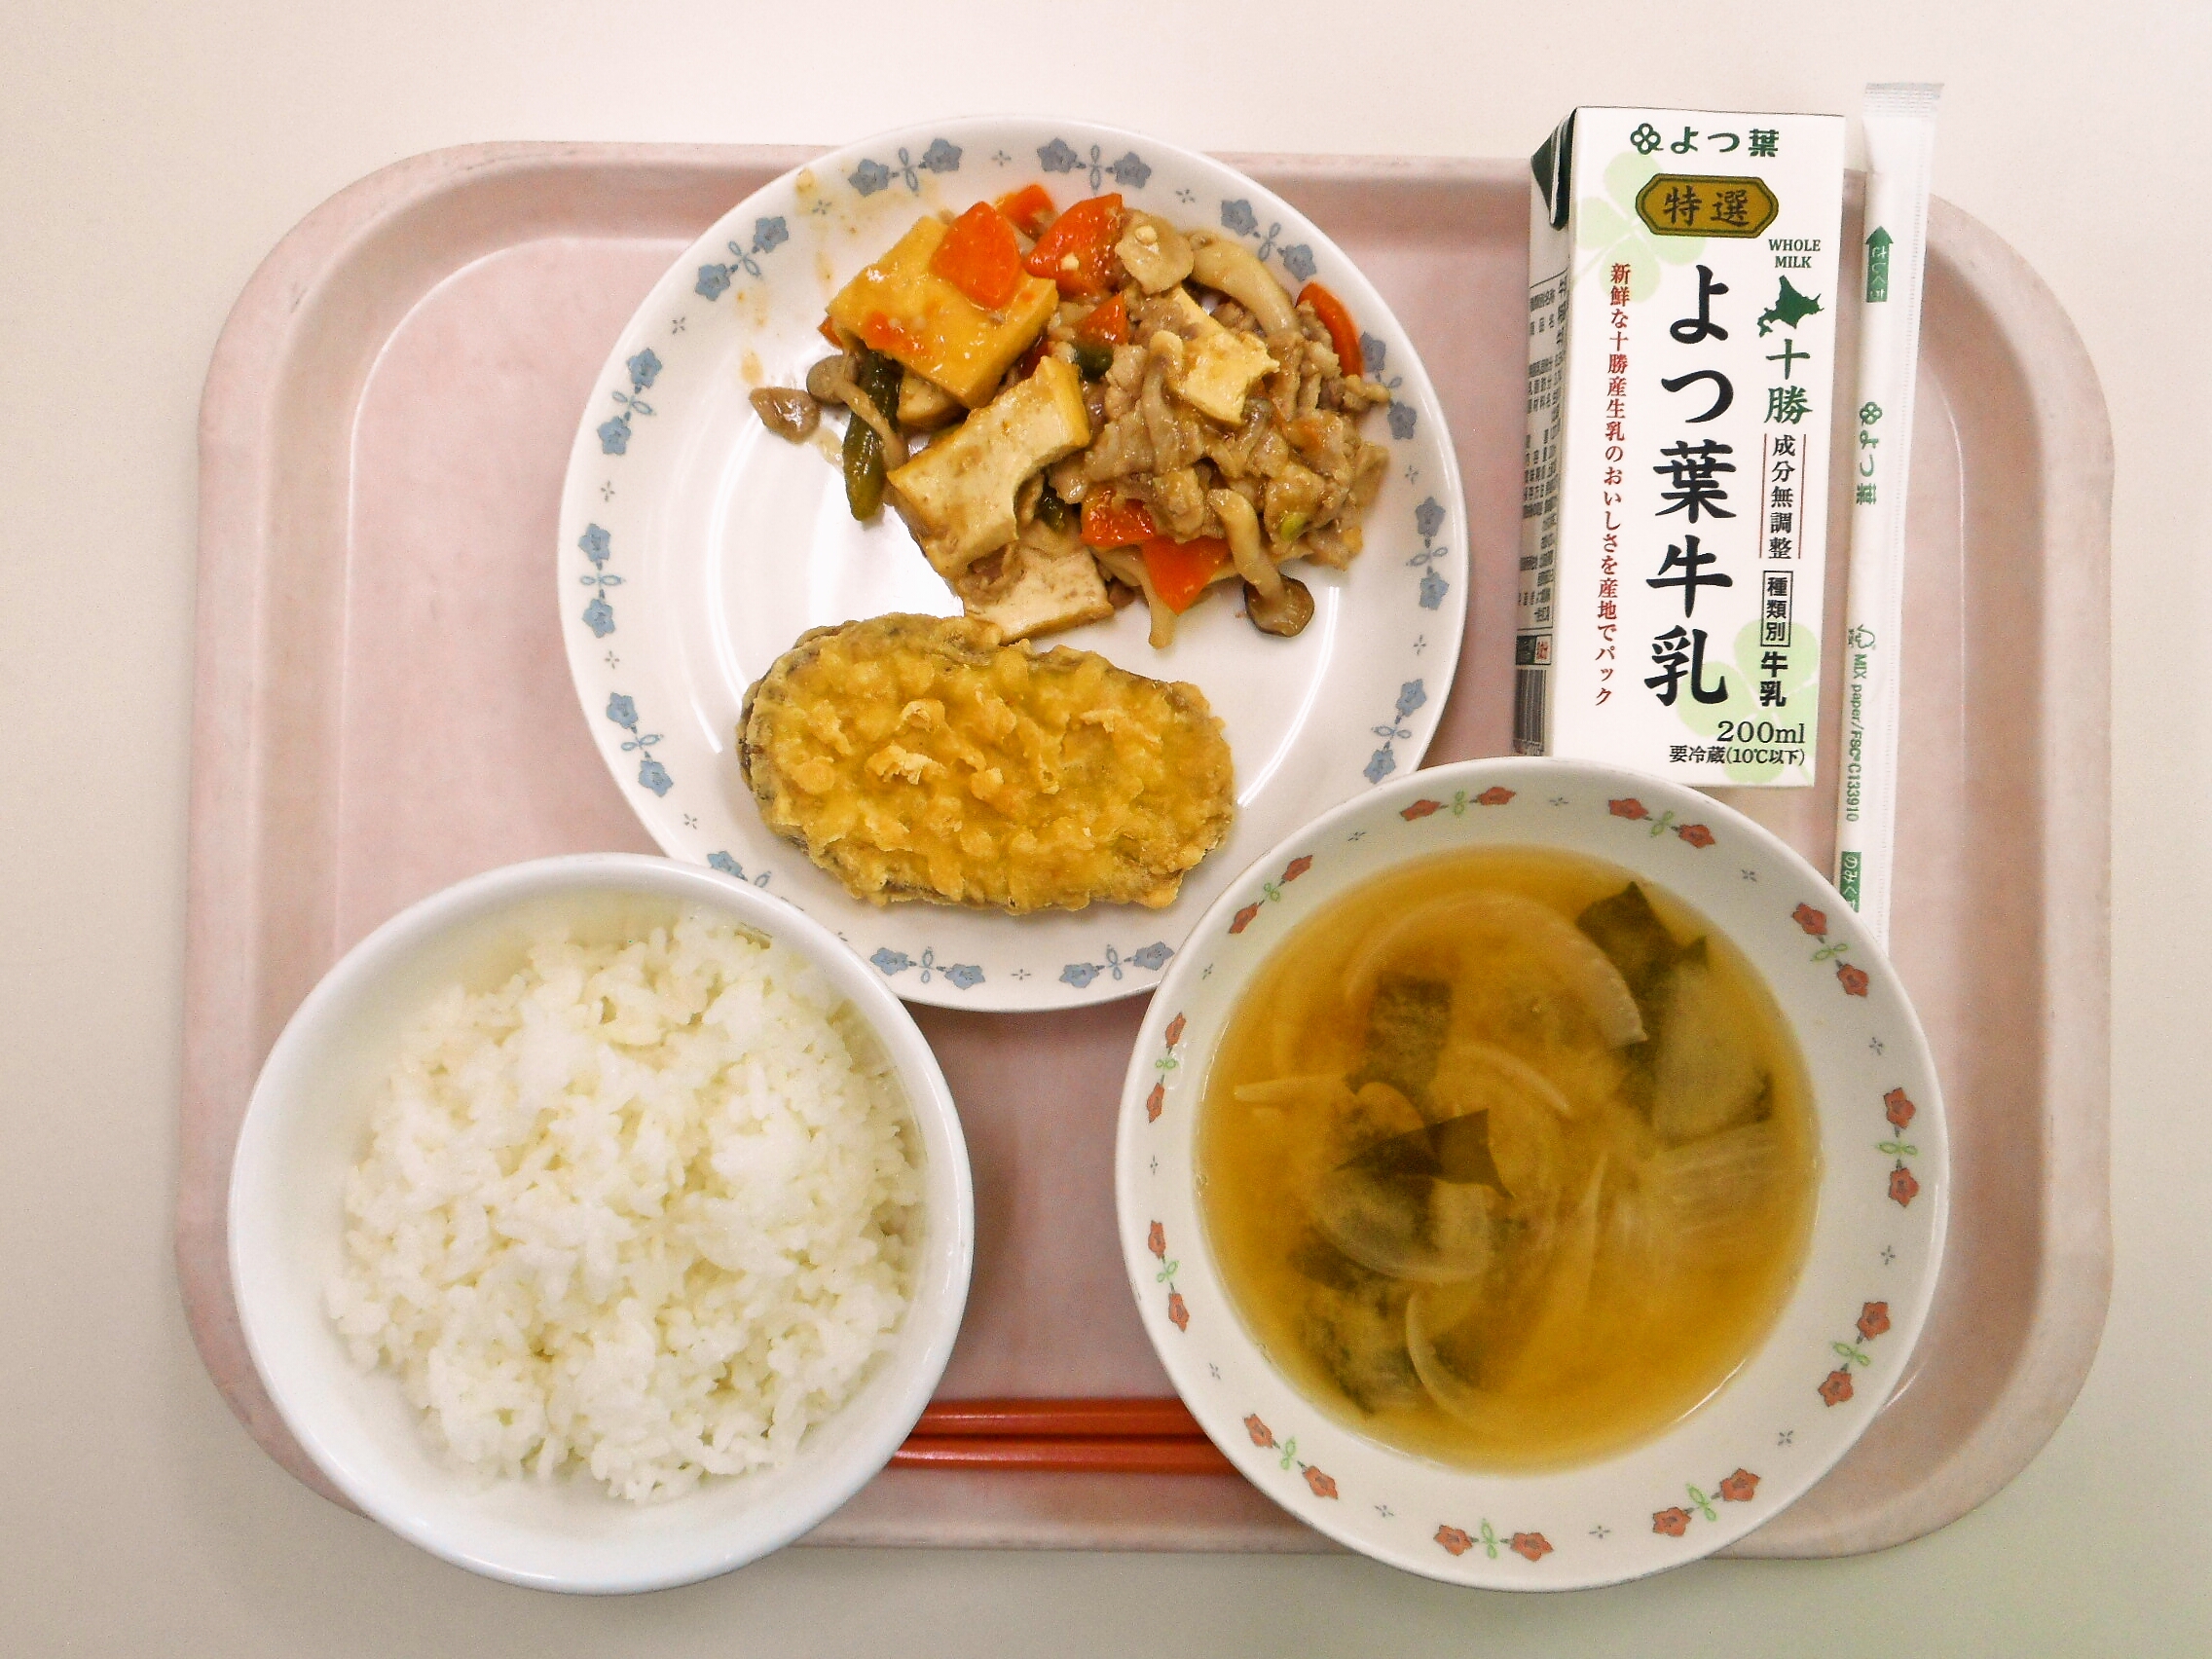 ごはん、みそ汁（玉ねぎ・わかめ）、さつまいもの天ぷら、肉豆腐、牛乳